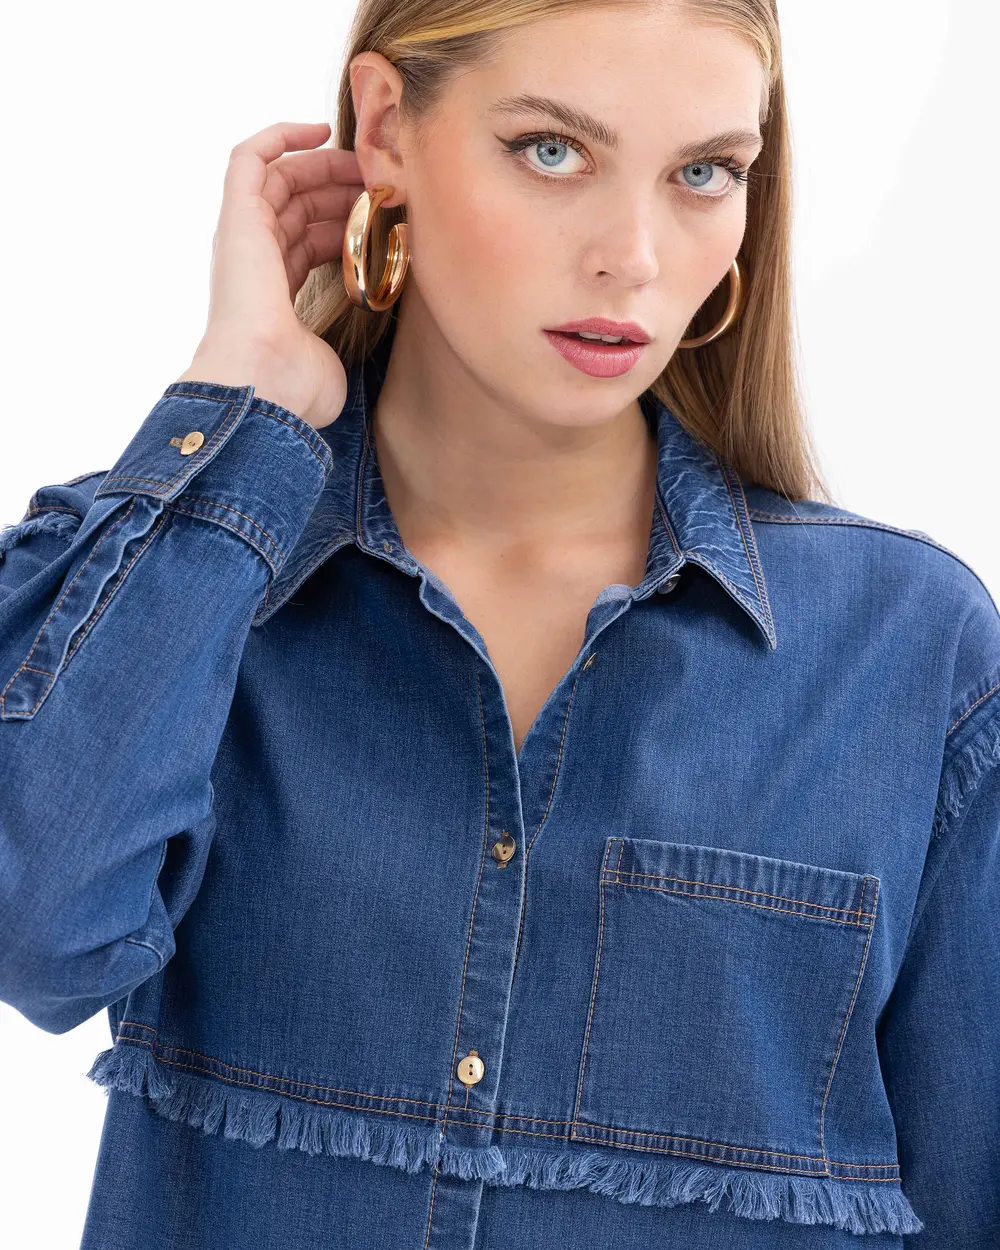 Buttoned Shirt Collar Jean Jacket